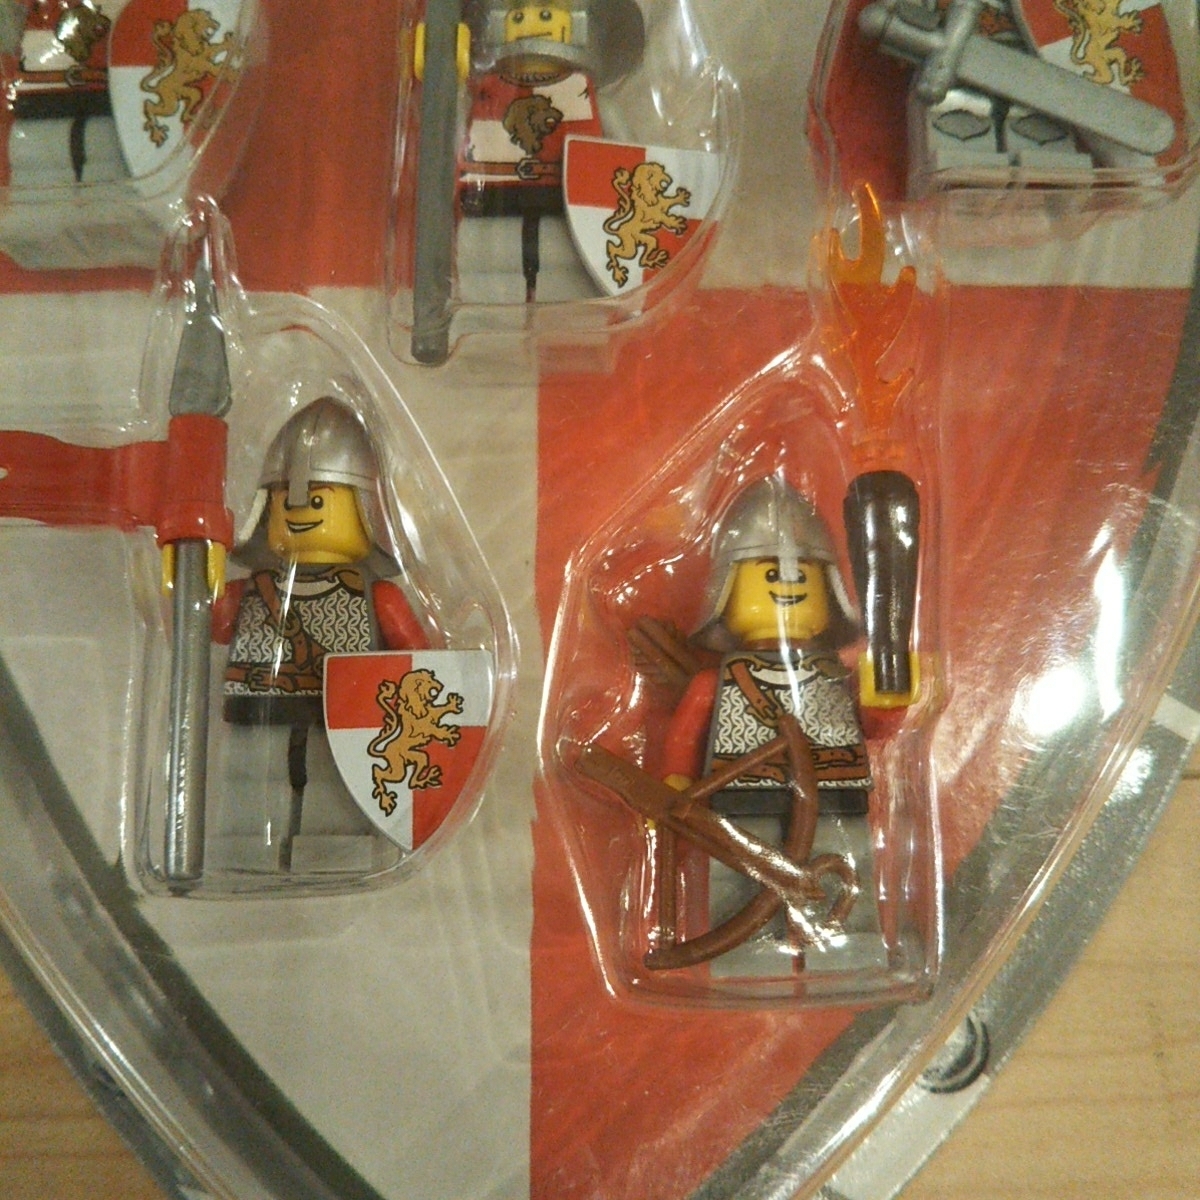 新品未開品 激レア廃盤品 コレクターアイテム LEGO レゴ キングダム ナイト バトルパック 852921 Kingdoms Knights Battle Pack _画像4